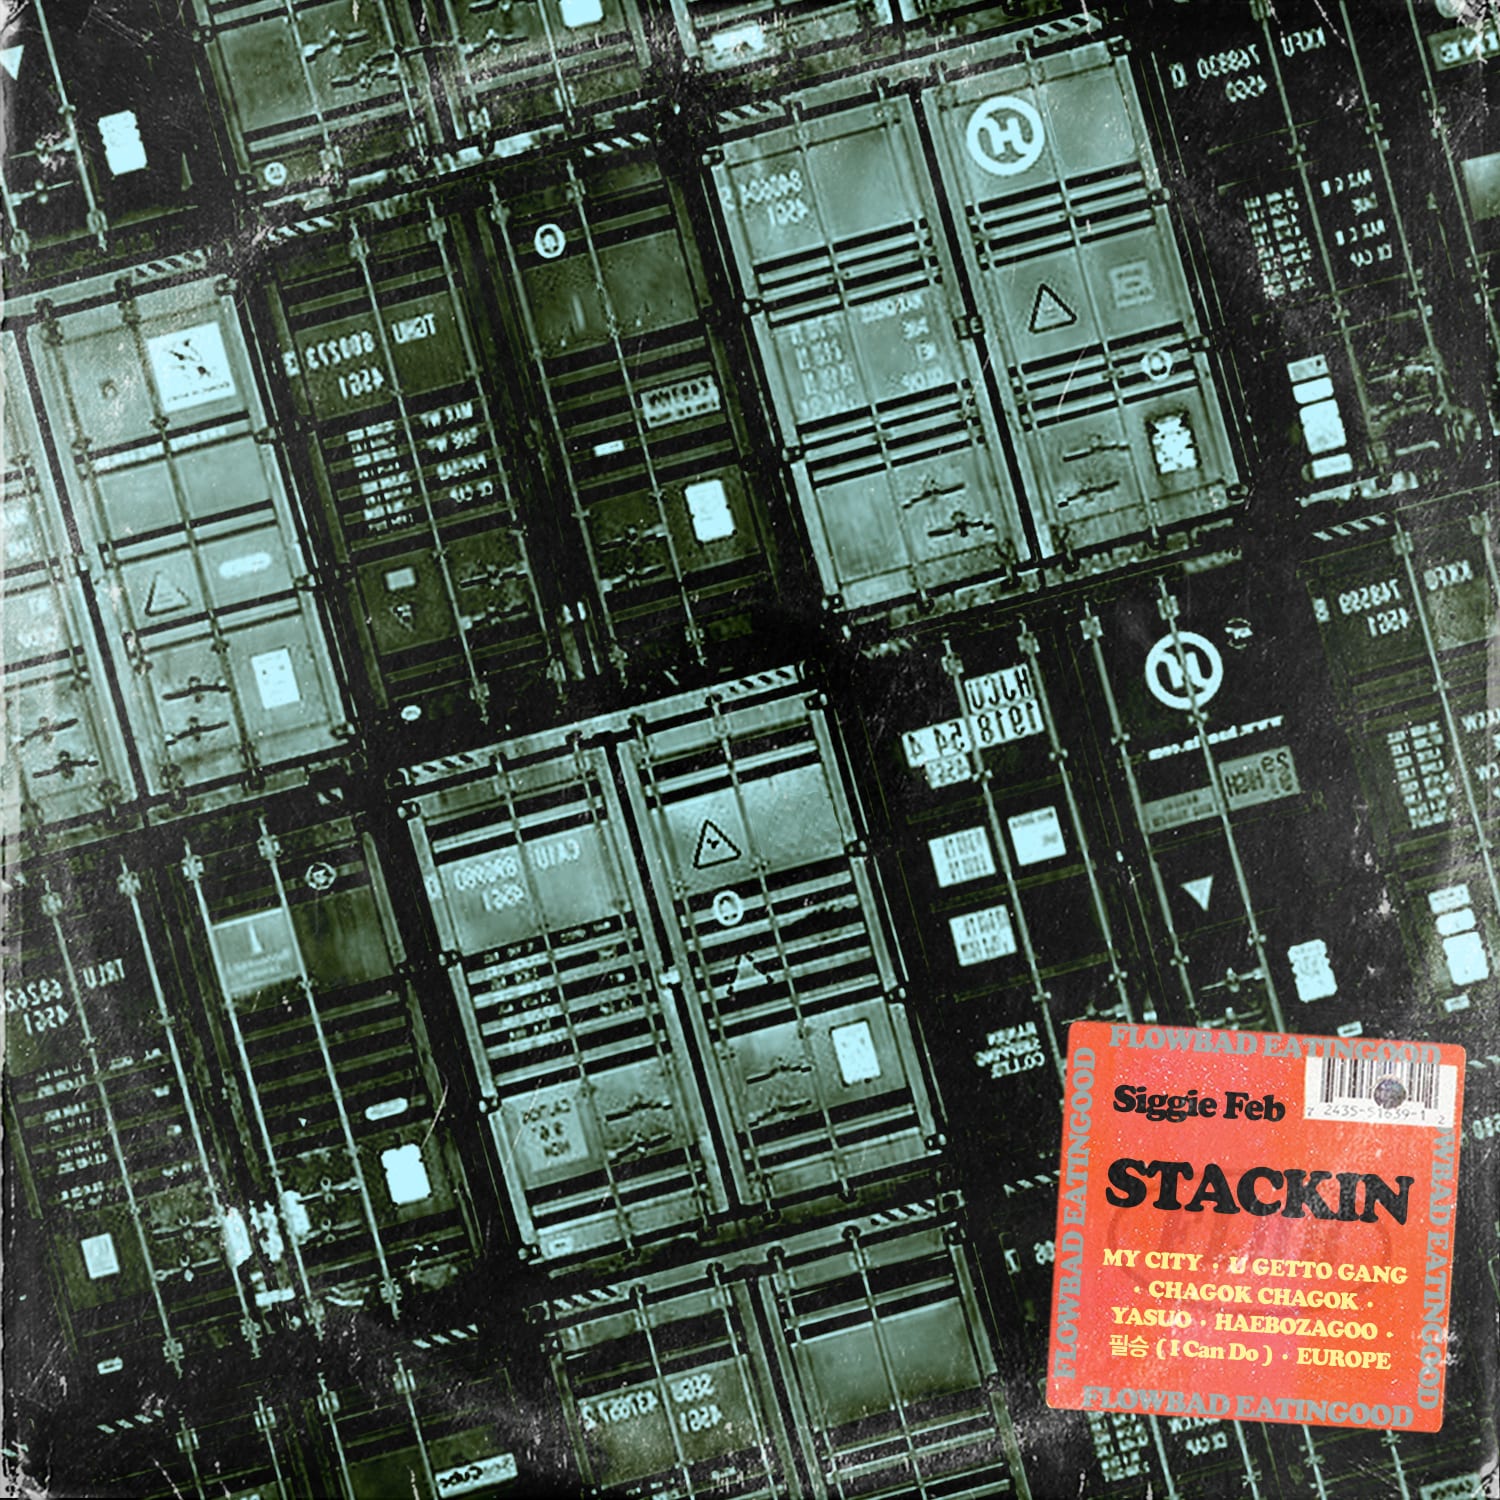 Siggie Feb - STACKIN (album cover)